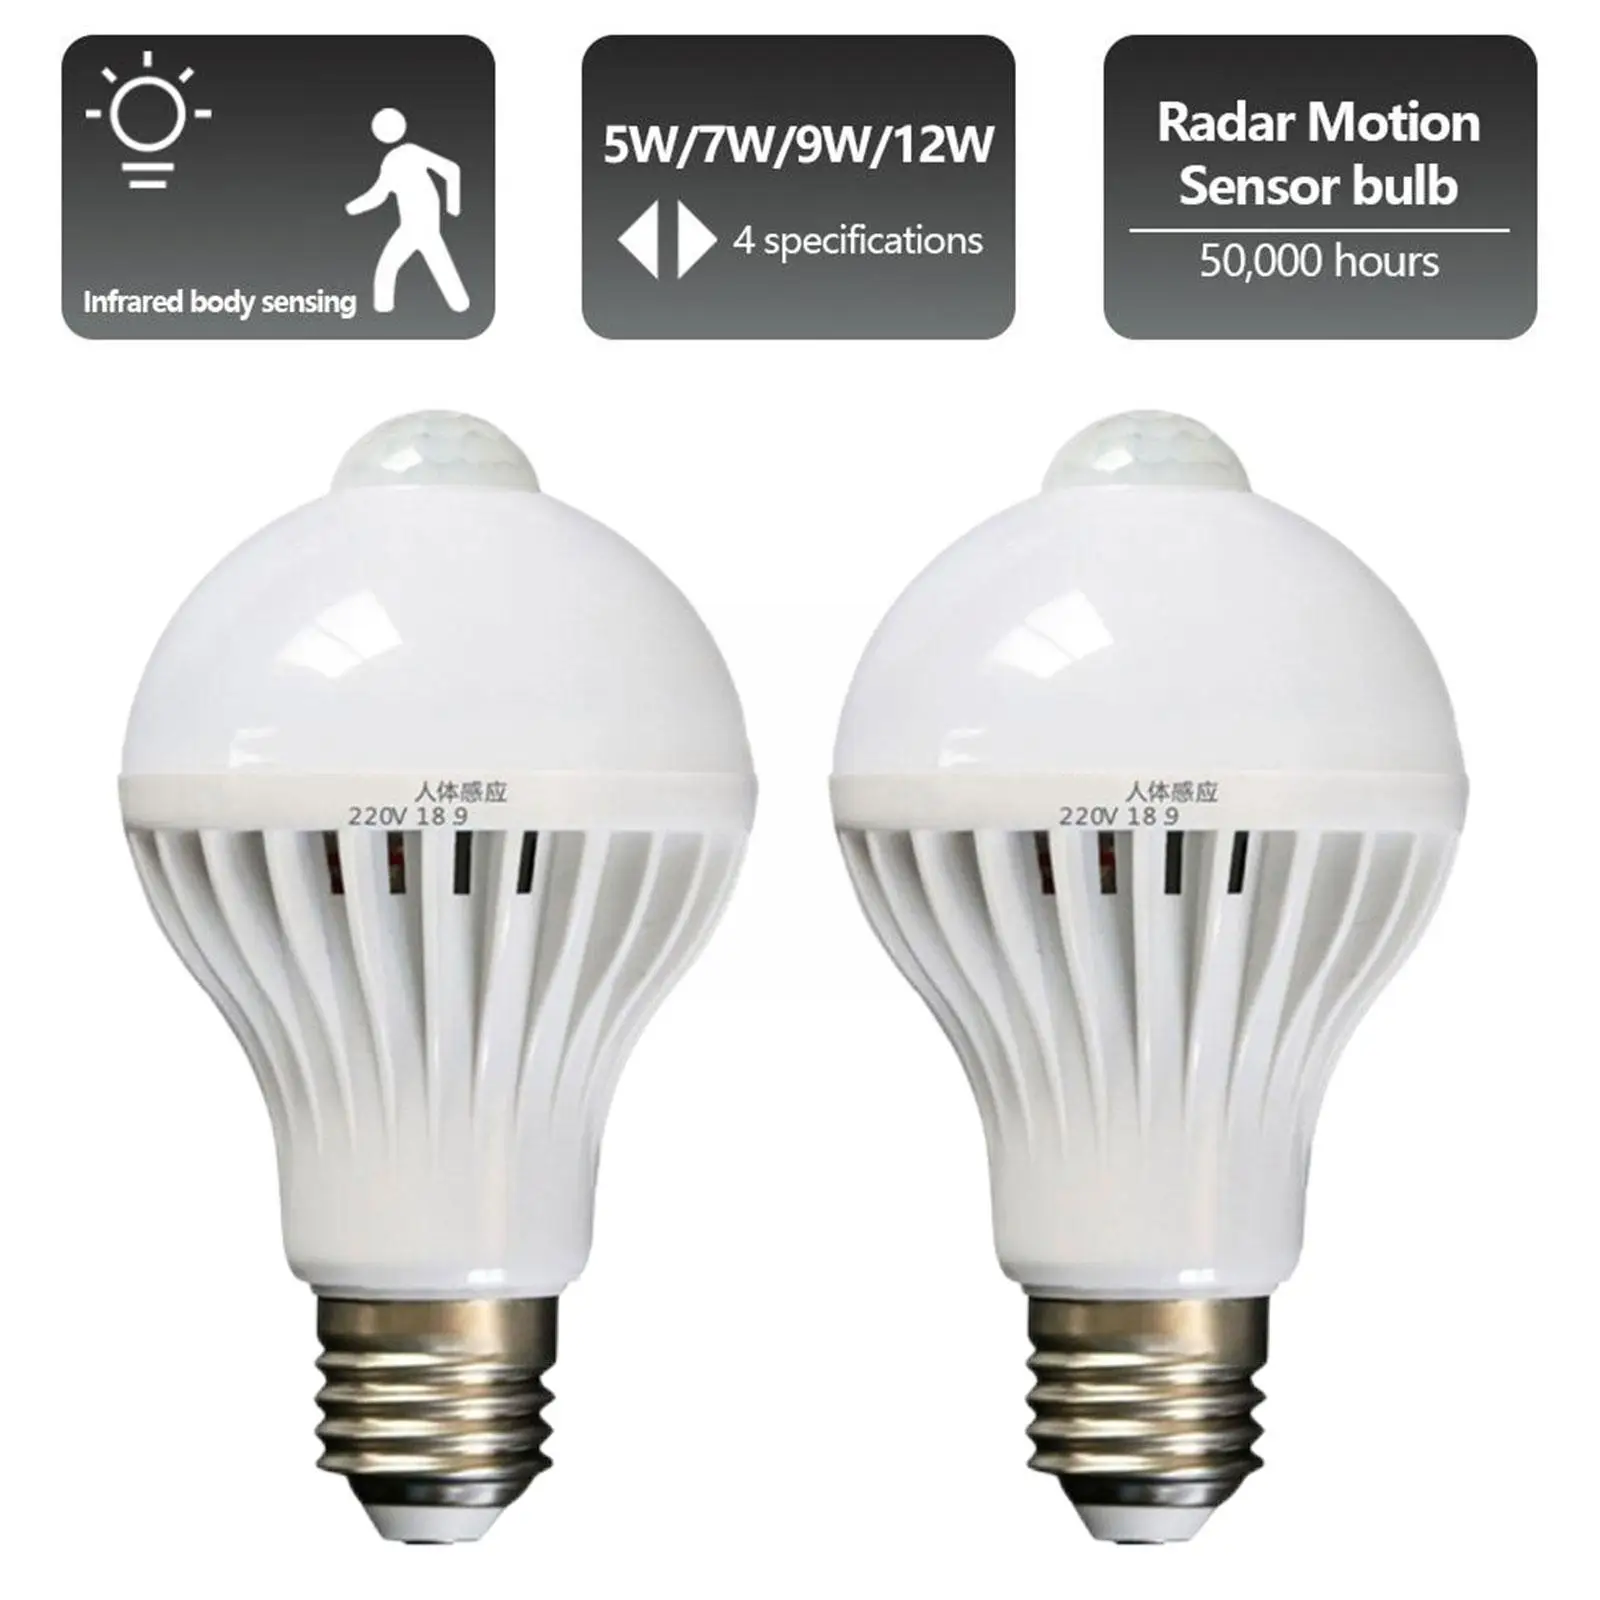 

Pir Motion Sensor Led Bulb E27 Lamp 5w 7w 12w 110v Corridor Stair Hallway Bulb Lamps Led 220v Light Light Night Induction G3t6